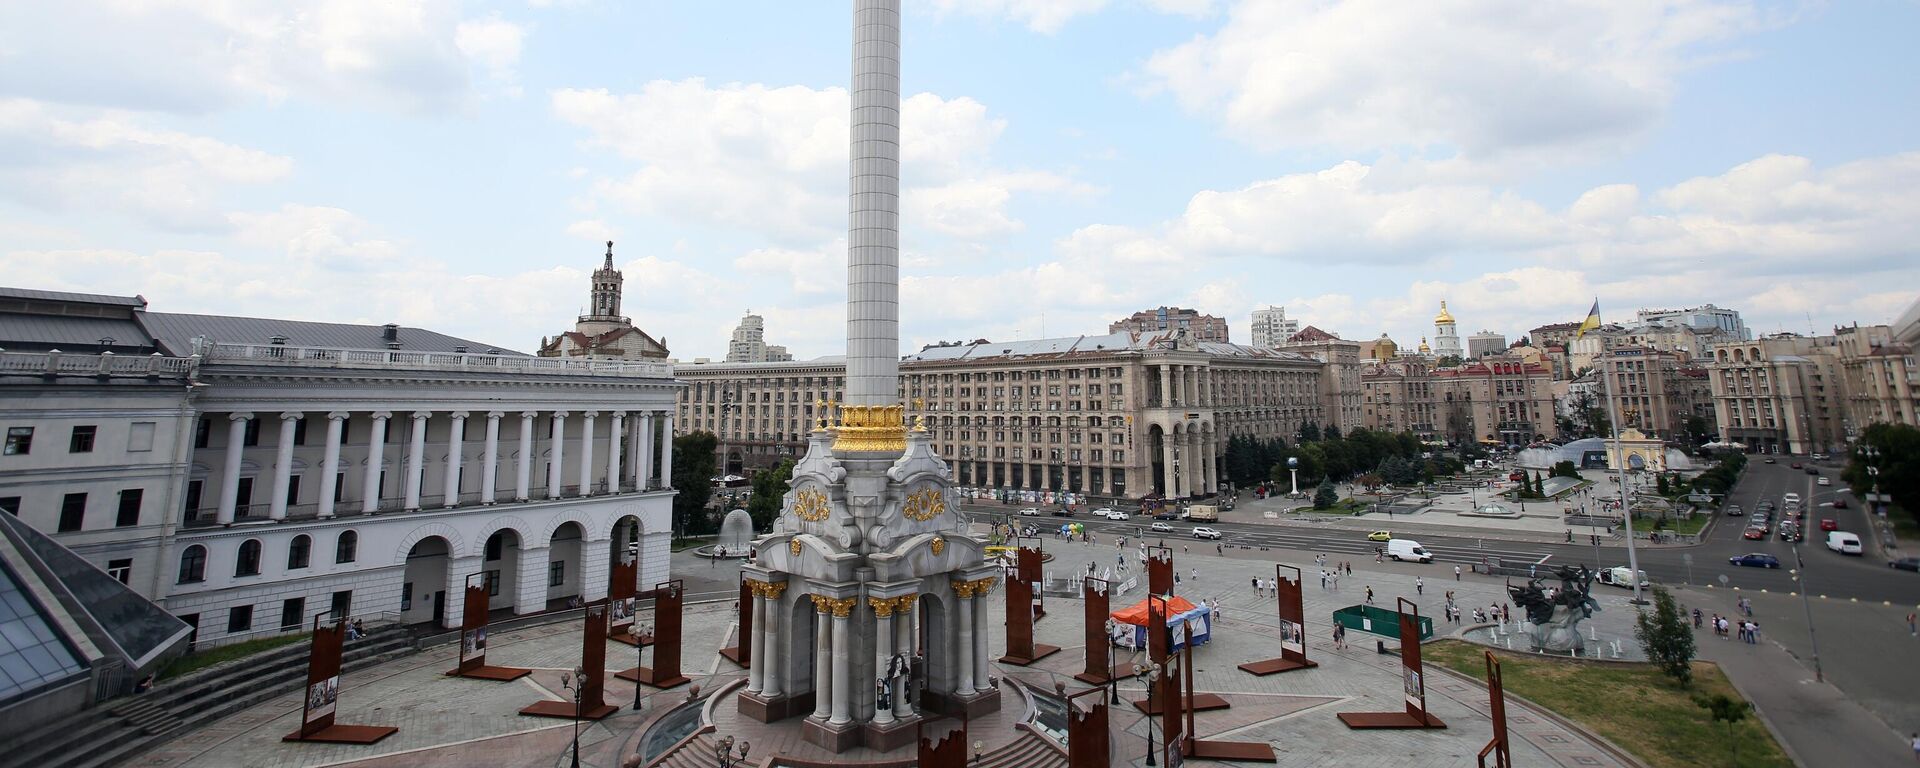 Площадь Независимости в Киеве, архивное фото - Sputnik Lietuva, 1920, 29.08.2021